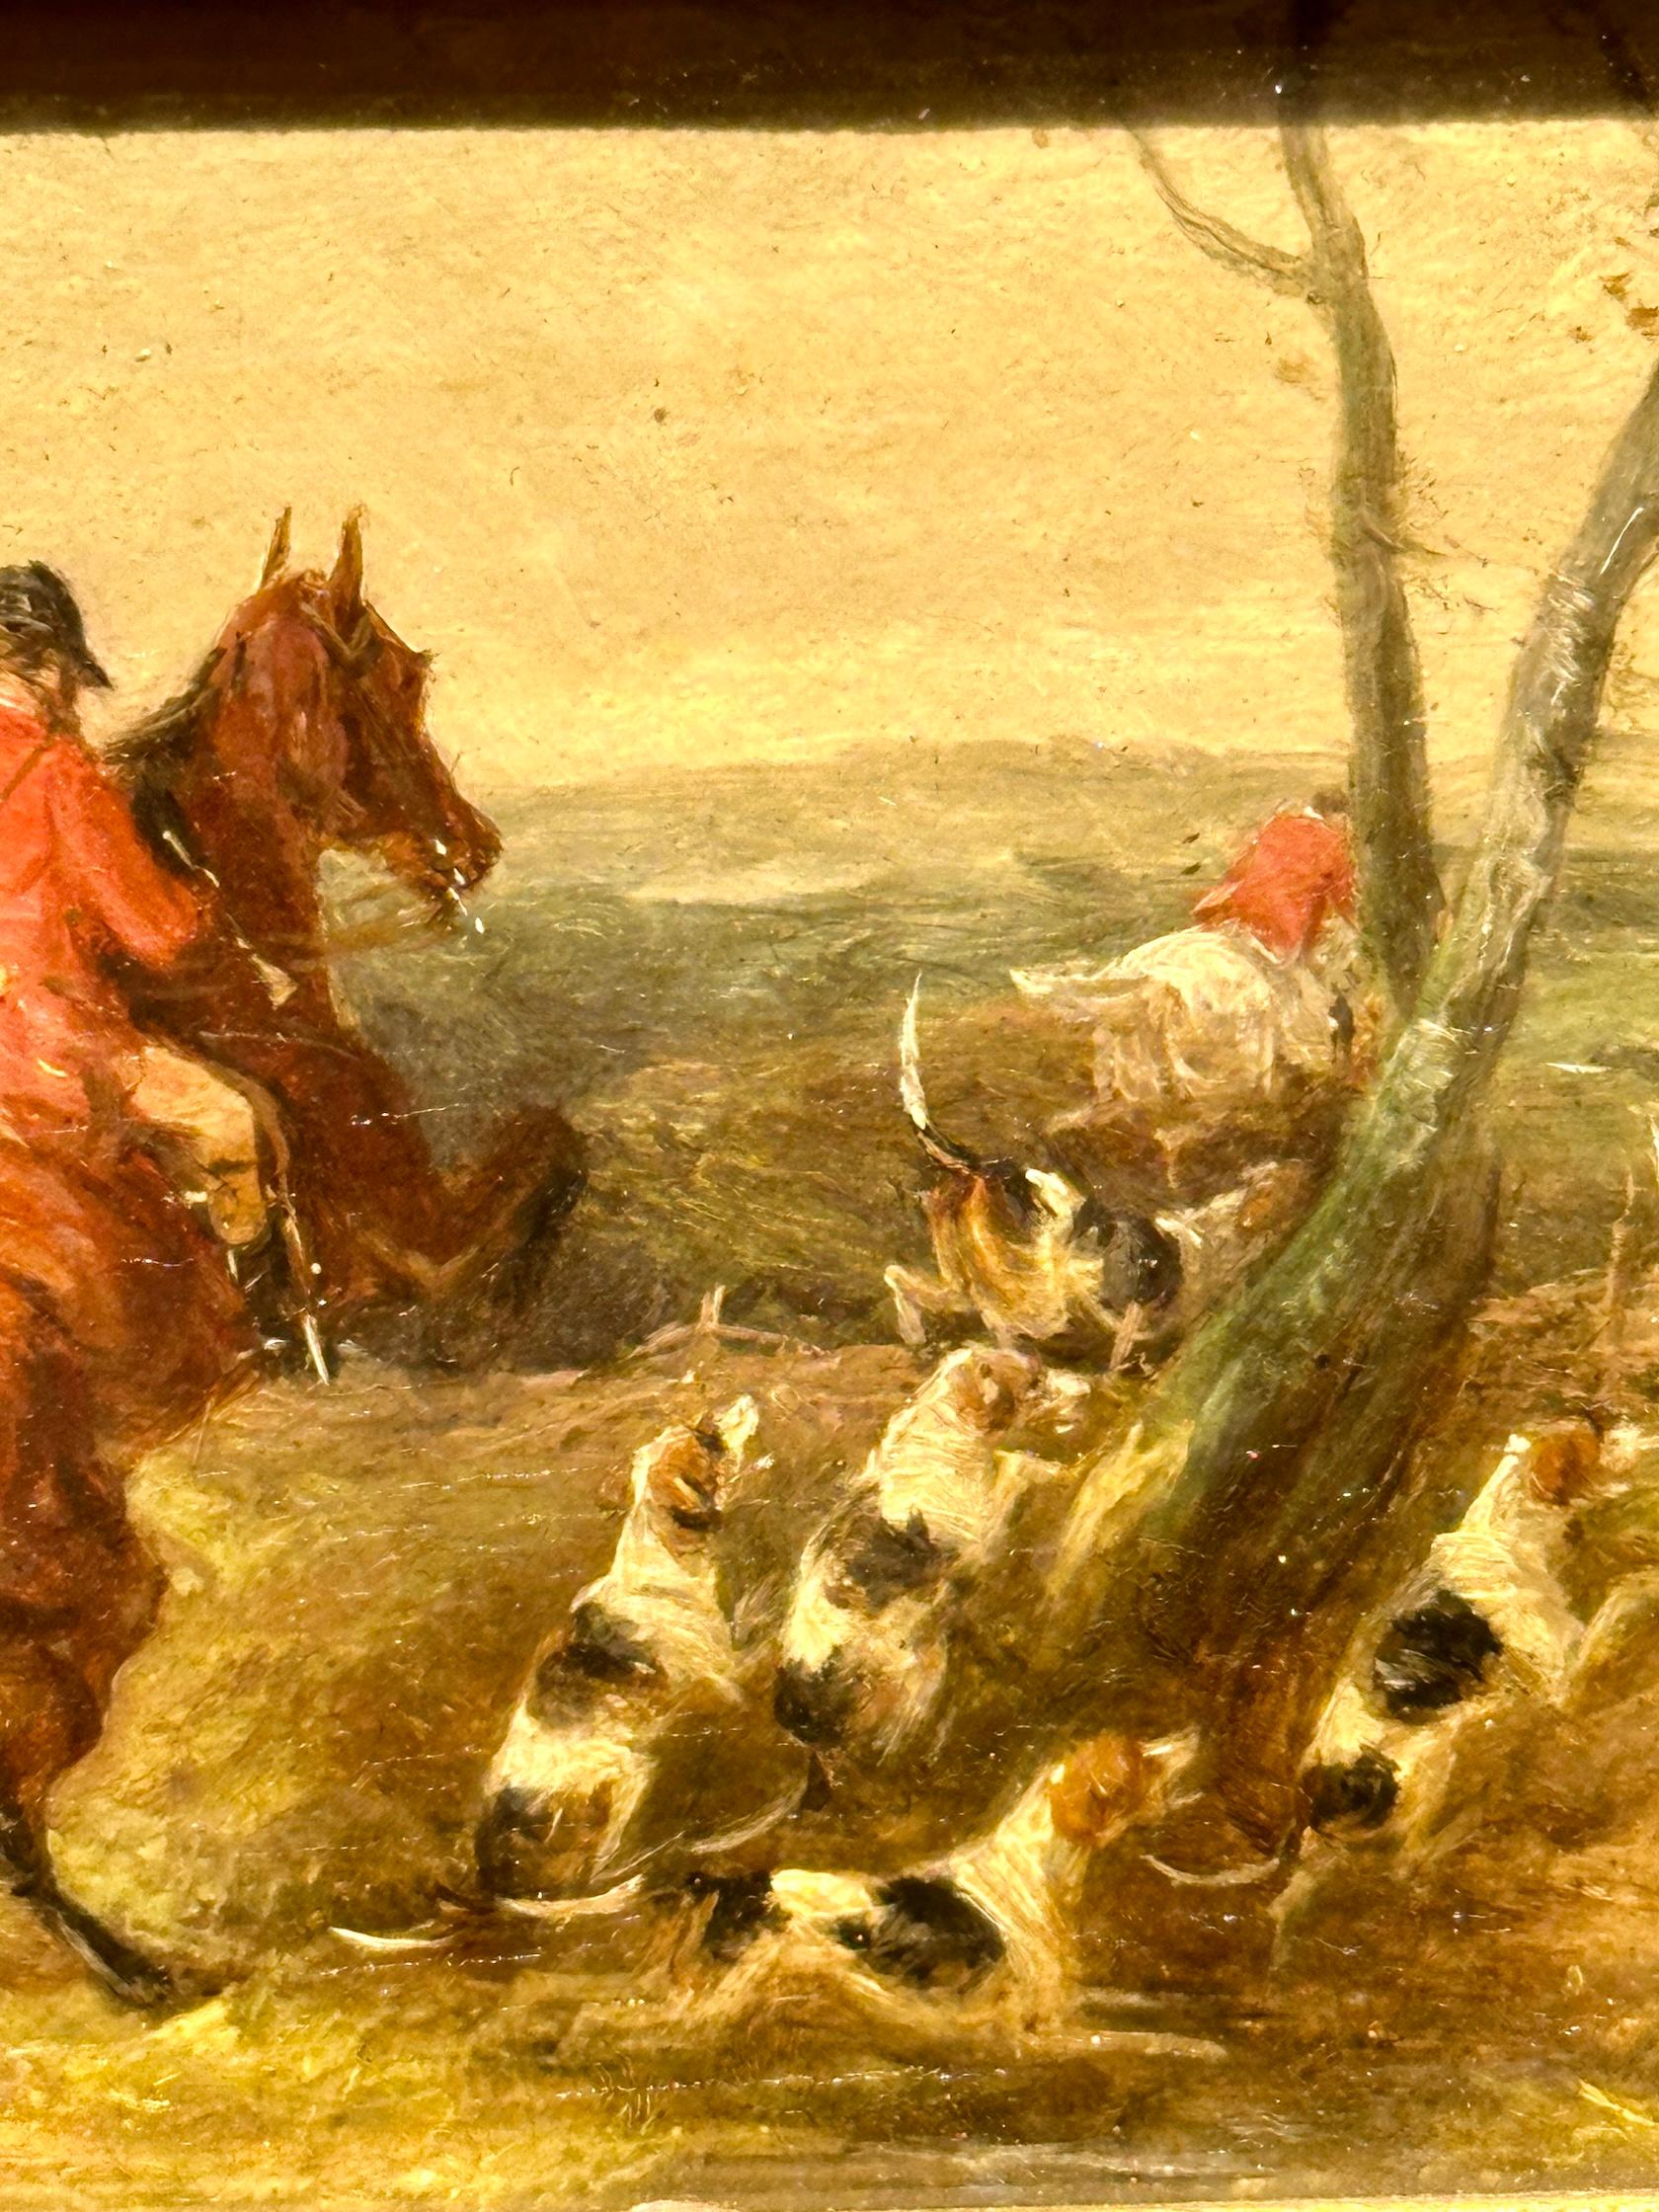 Chasseur de renards anglais du 19e siècle sur son cheval, huile dans un paysage avec des chiens de chasse - Painting de William Joseph Shayer